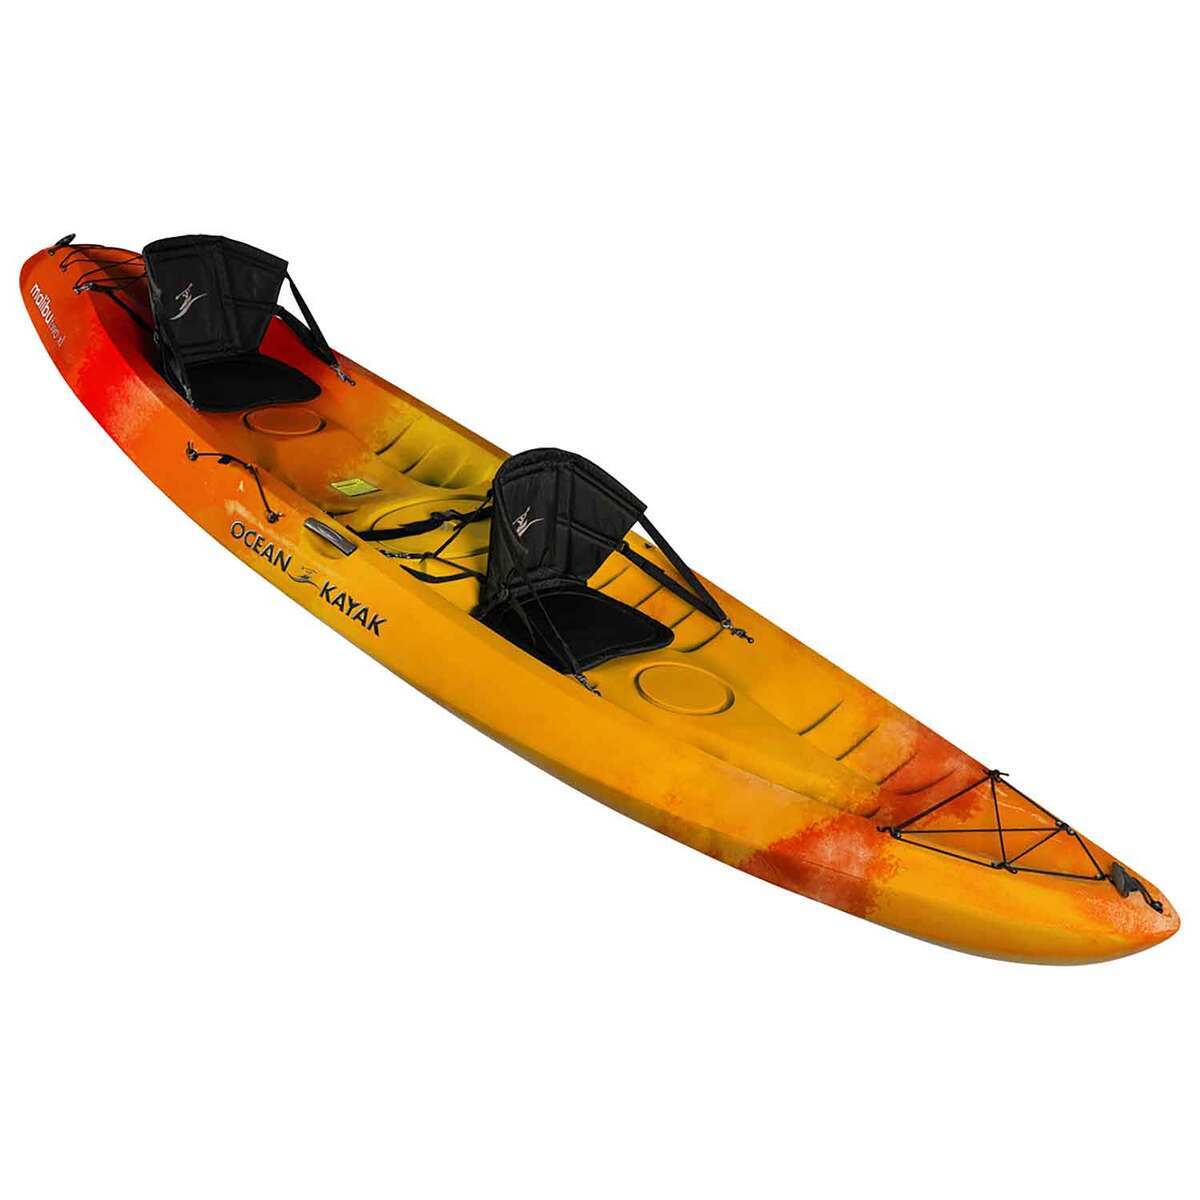 https://www.sportsmans.com/medias/ocean-kayak-malibu-two-xl-sit-on-top-kayaks-sunrise-1782917-1.jpg?context=bWFzdGVyfGltYWdlc3w1MDQ1NXxpbWFnZS9qcGVnfGFEVTRMMmd3TkM4eE1EazRNamt4T1RnMk5ETTFNQzh4TnpneU9URTNMVEZmWW1GelpTMWpiMjUyWlhKemFXOXVSbTl5YldGMFh6RXlNREF0WTI5dWRtVnljMmx2YmtadmNtMWhkQXwwNzk2ZTU1OTNjMTcyZWIxY2ZlZTlmMGI3NmNmYzFmNmMwZjhjMGIxMGUzMGI2ZWUyYjAwMjU2NmNmZWNlNzEy